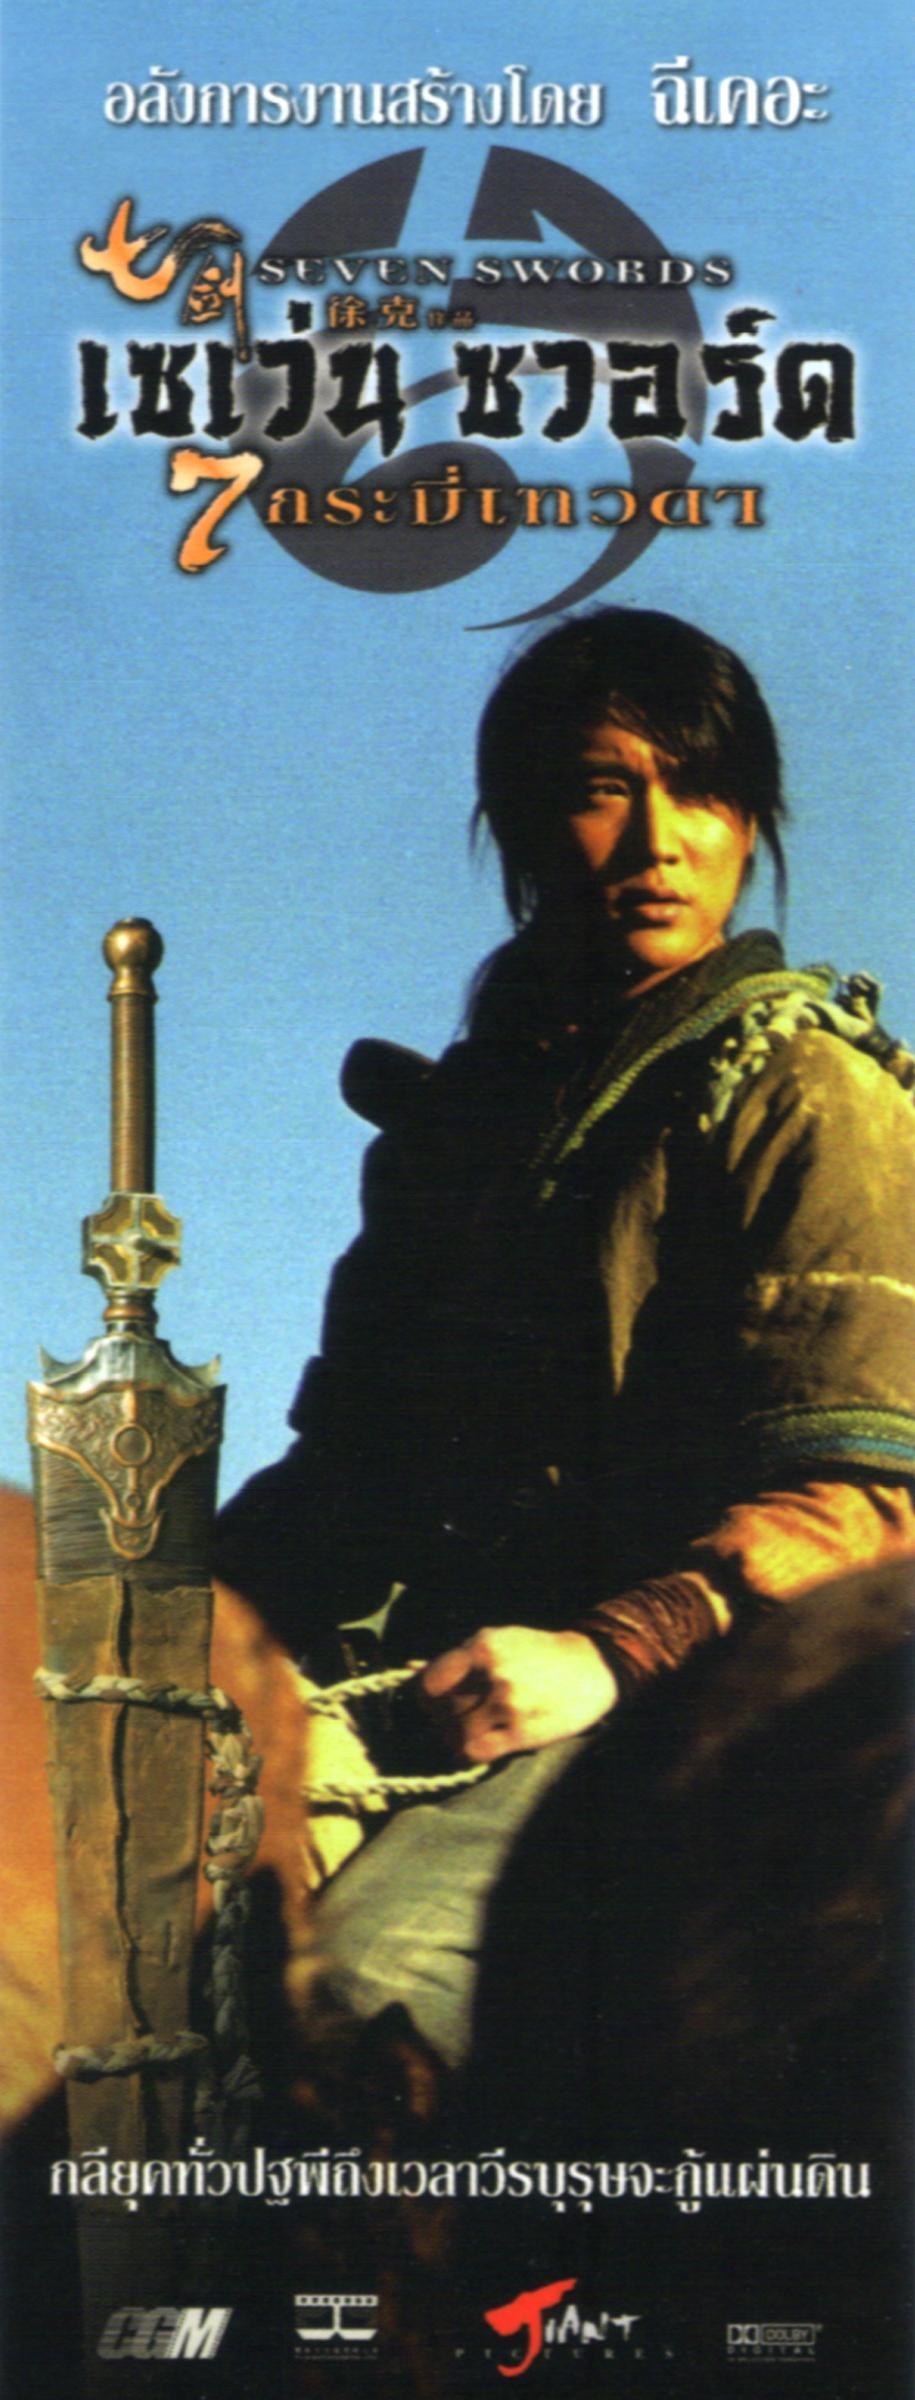 Постер фильма Семь мечей | Seven Swords